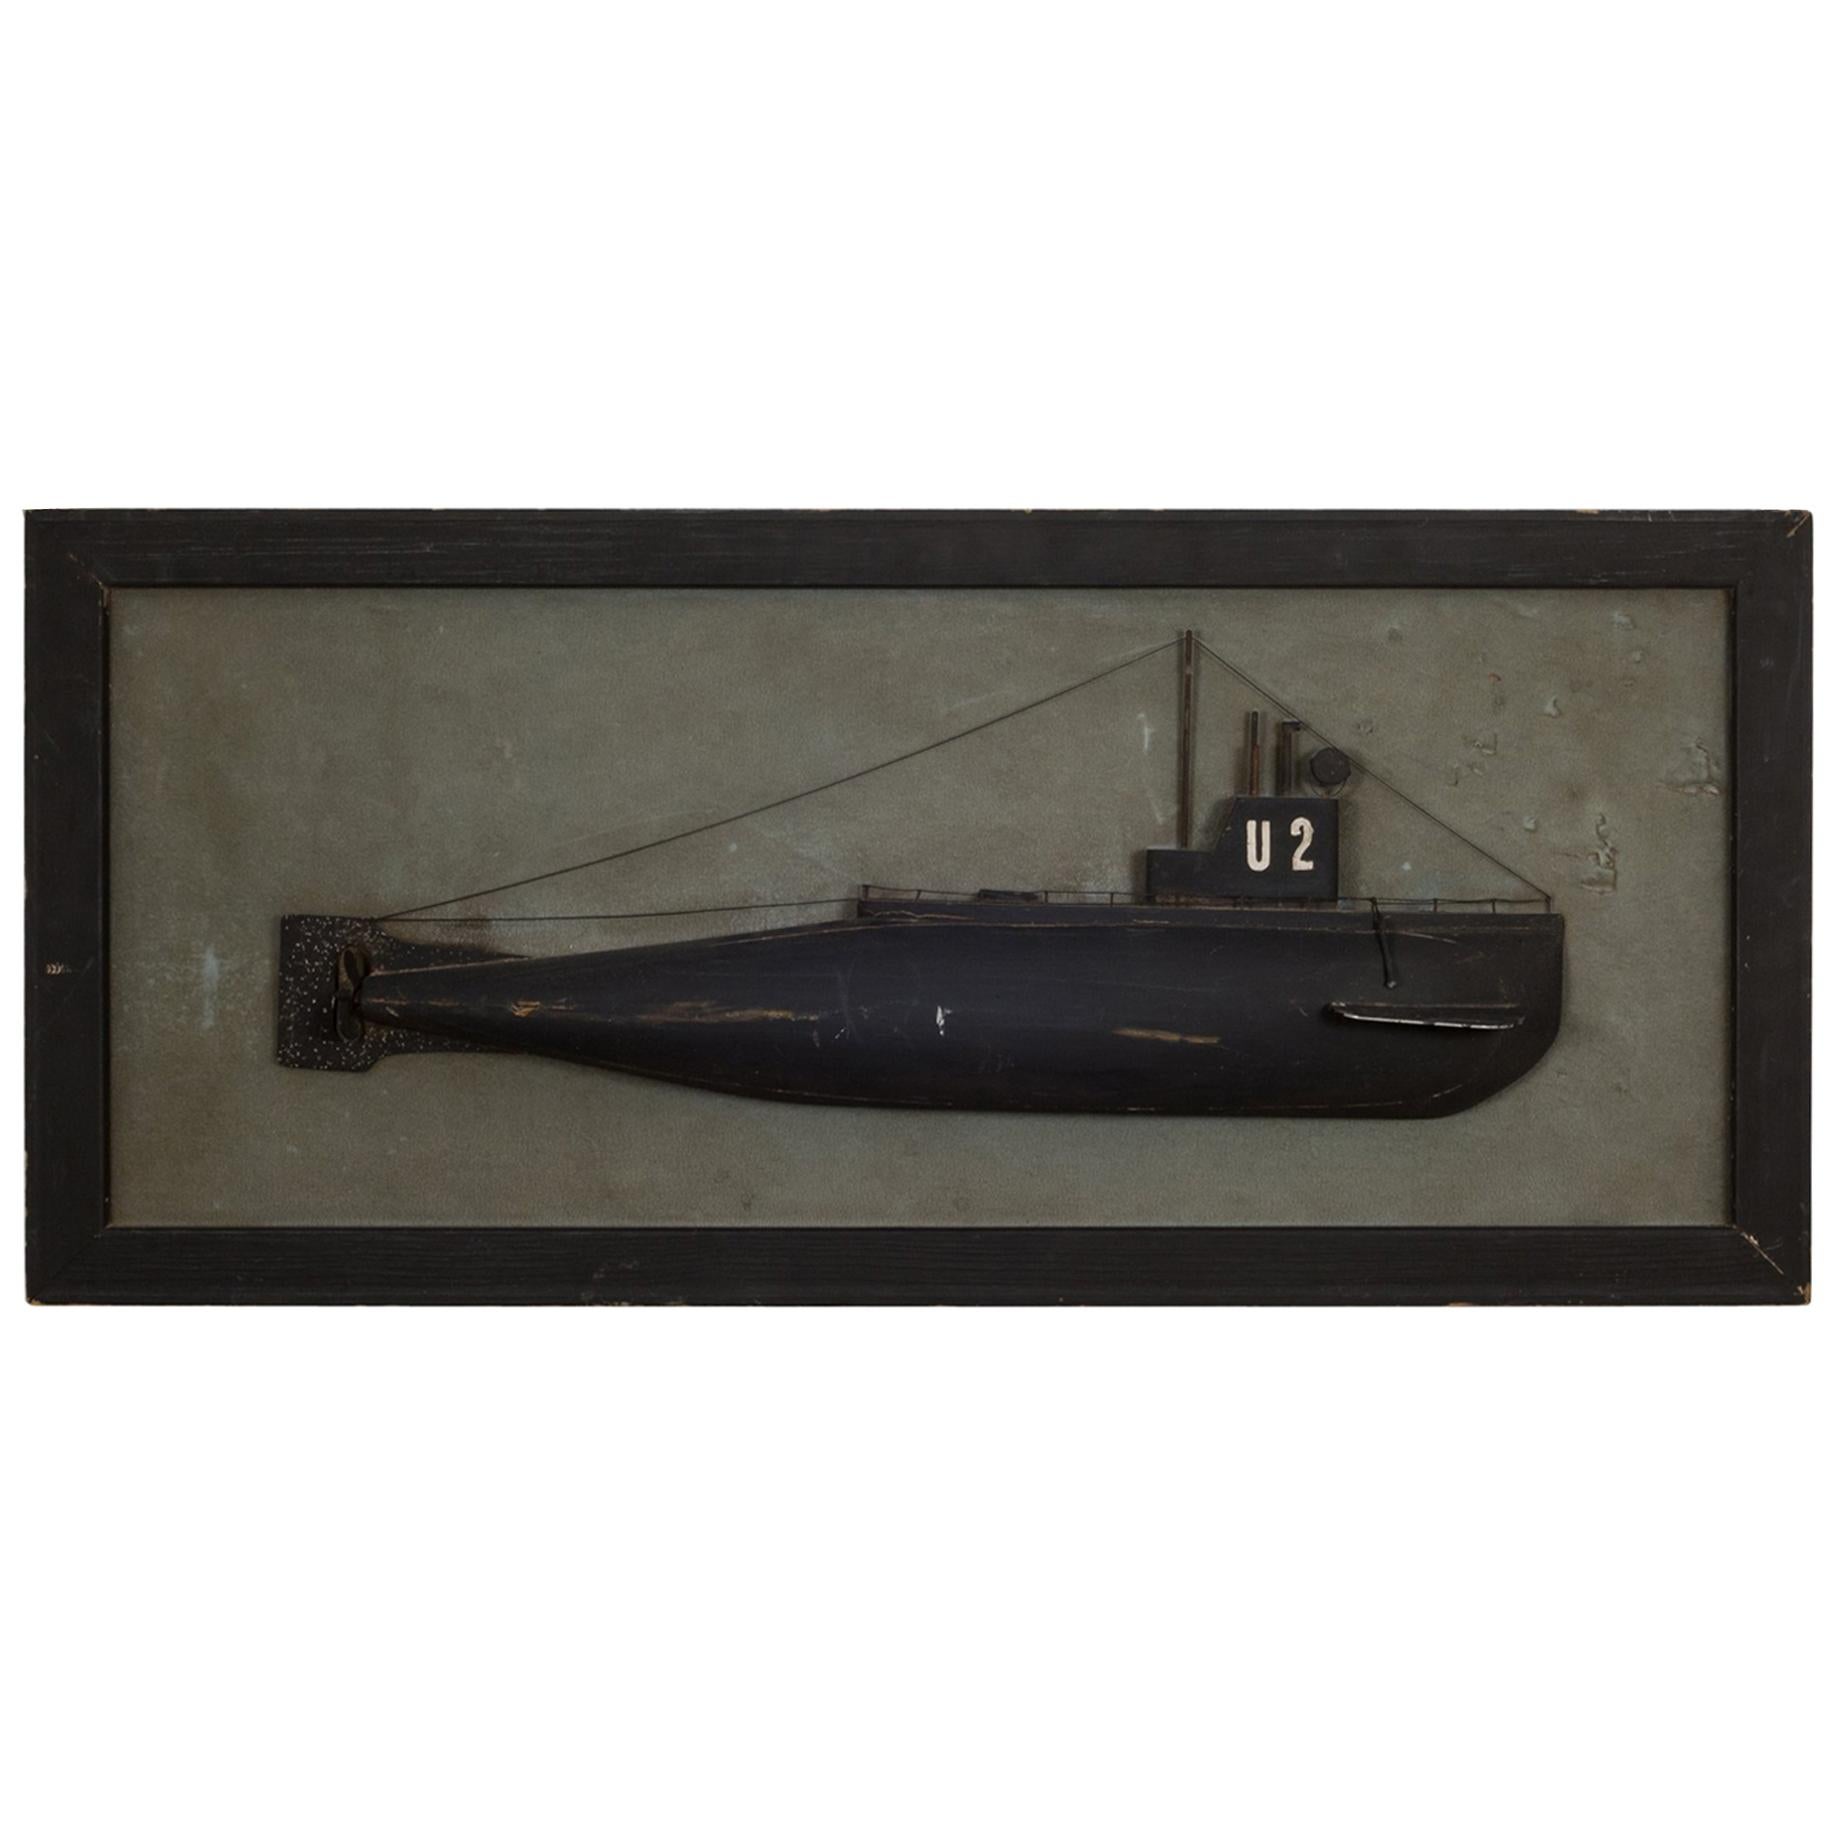 Rare Submarine Half Hull, circa 1940